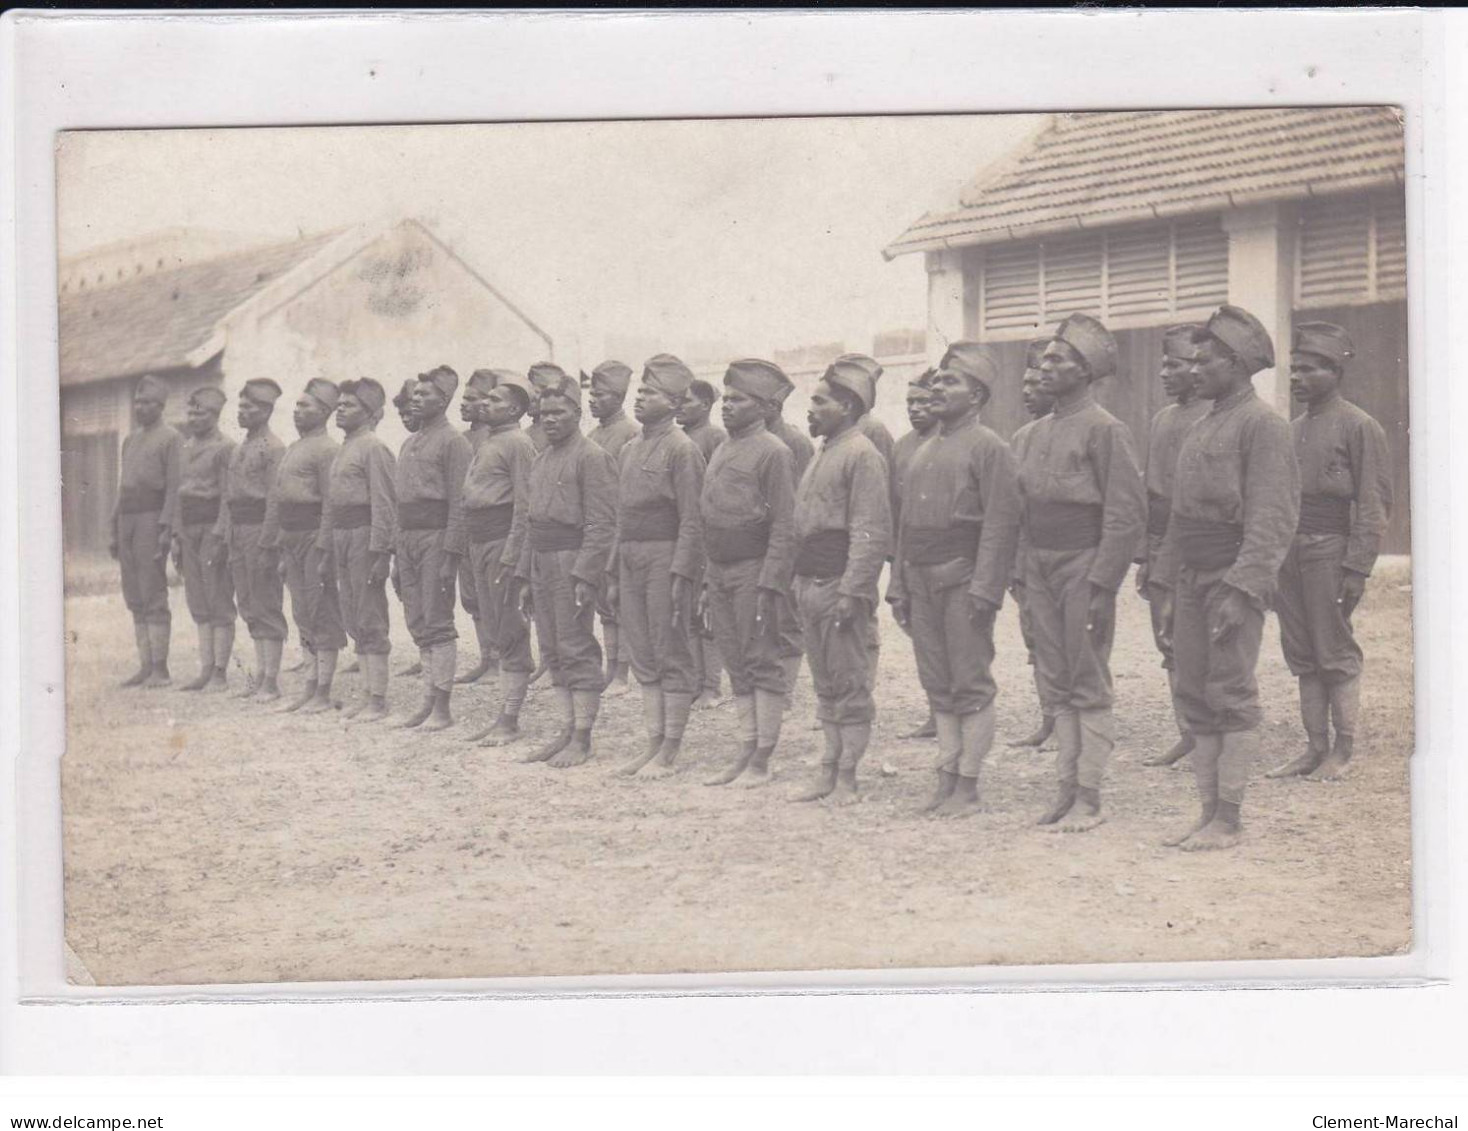 TAHITI / Nouvelle Calédonie / Ile des Pins / Iles Loyautés : lot de 5 cartes photo de militaires (guerre 14-18) - TBE